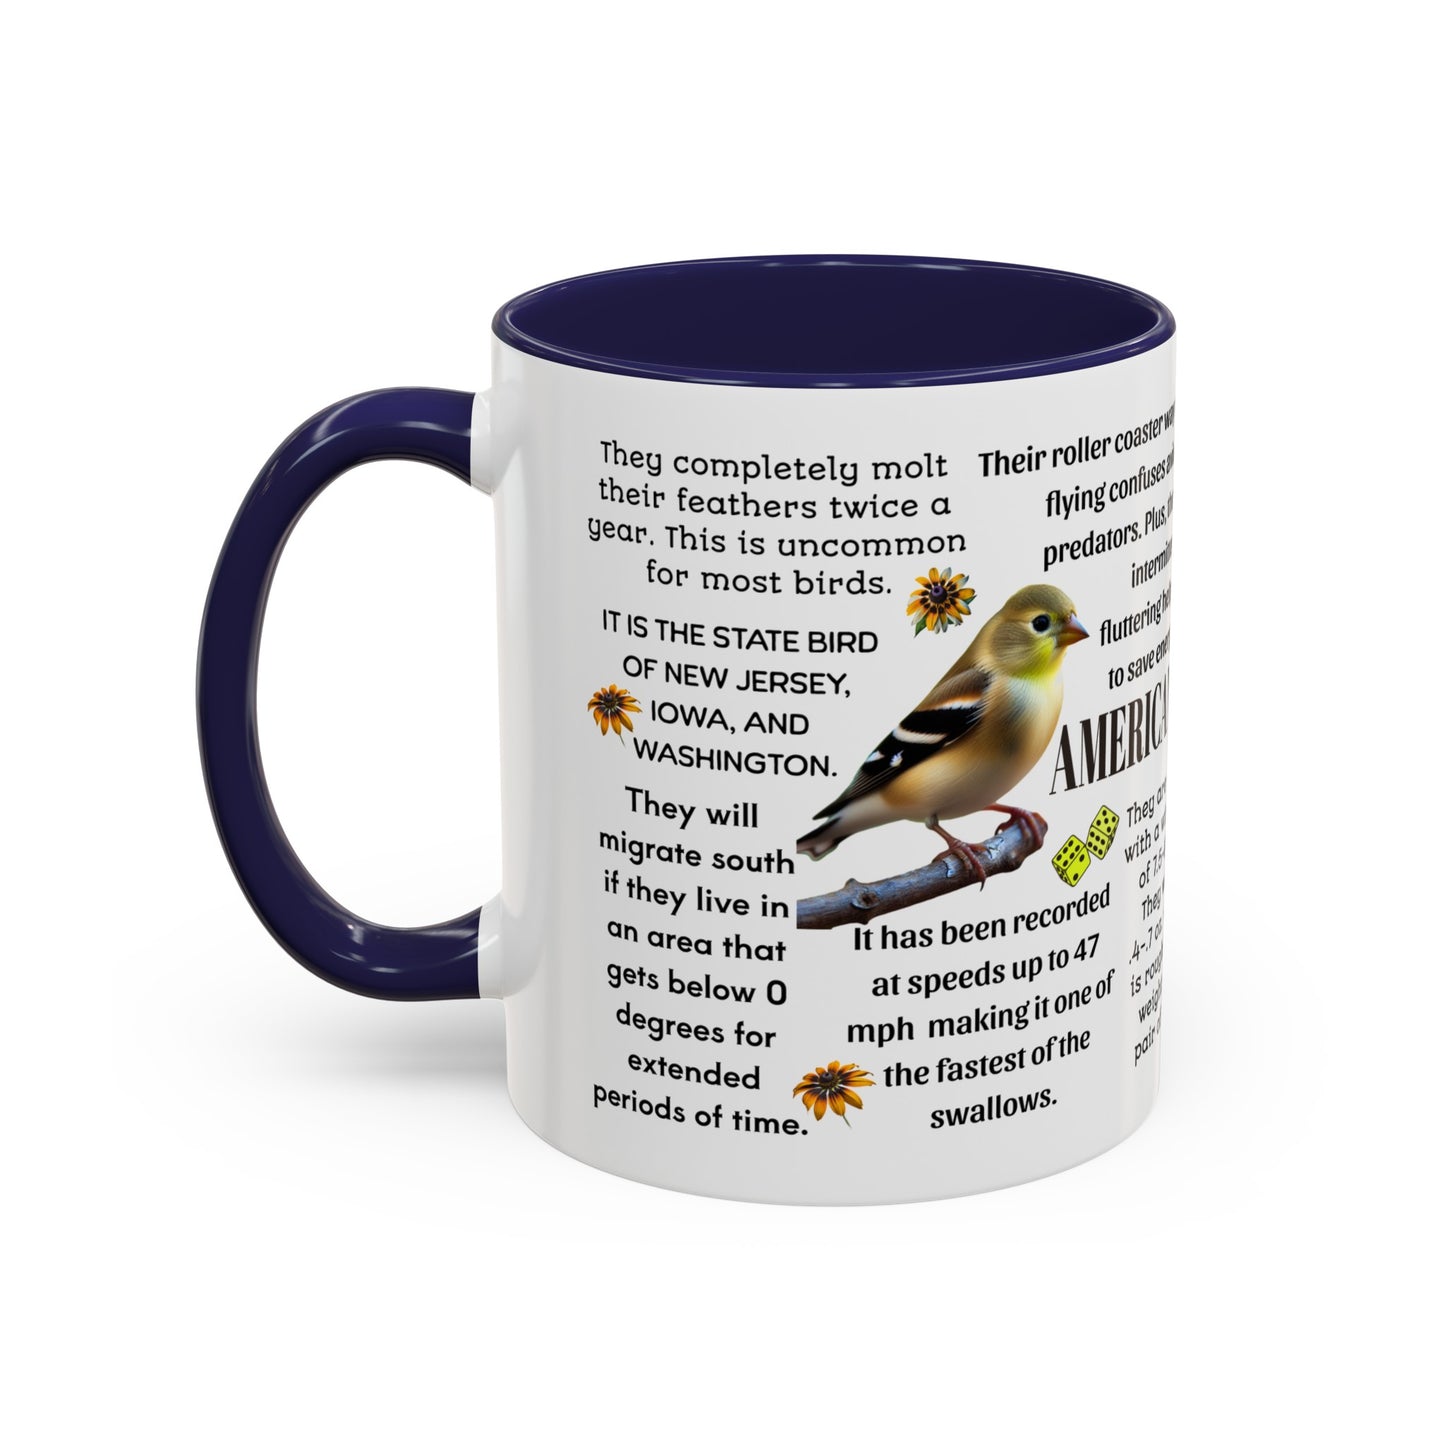 American Goldfinch Coffee Mug, 11 oz or 15oz